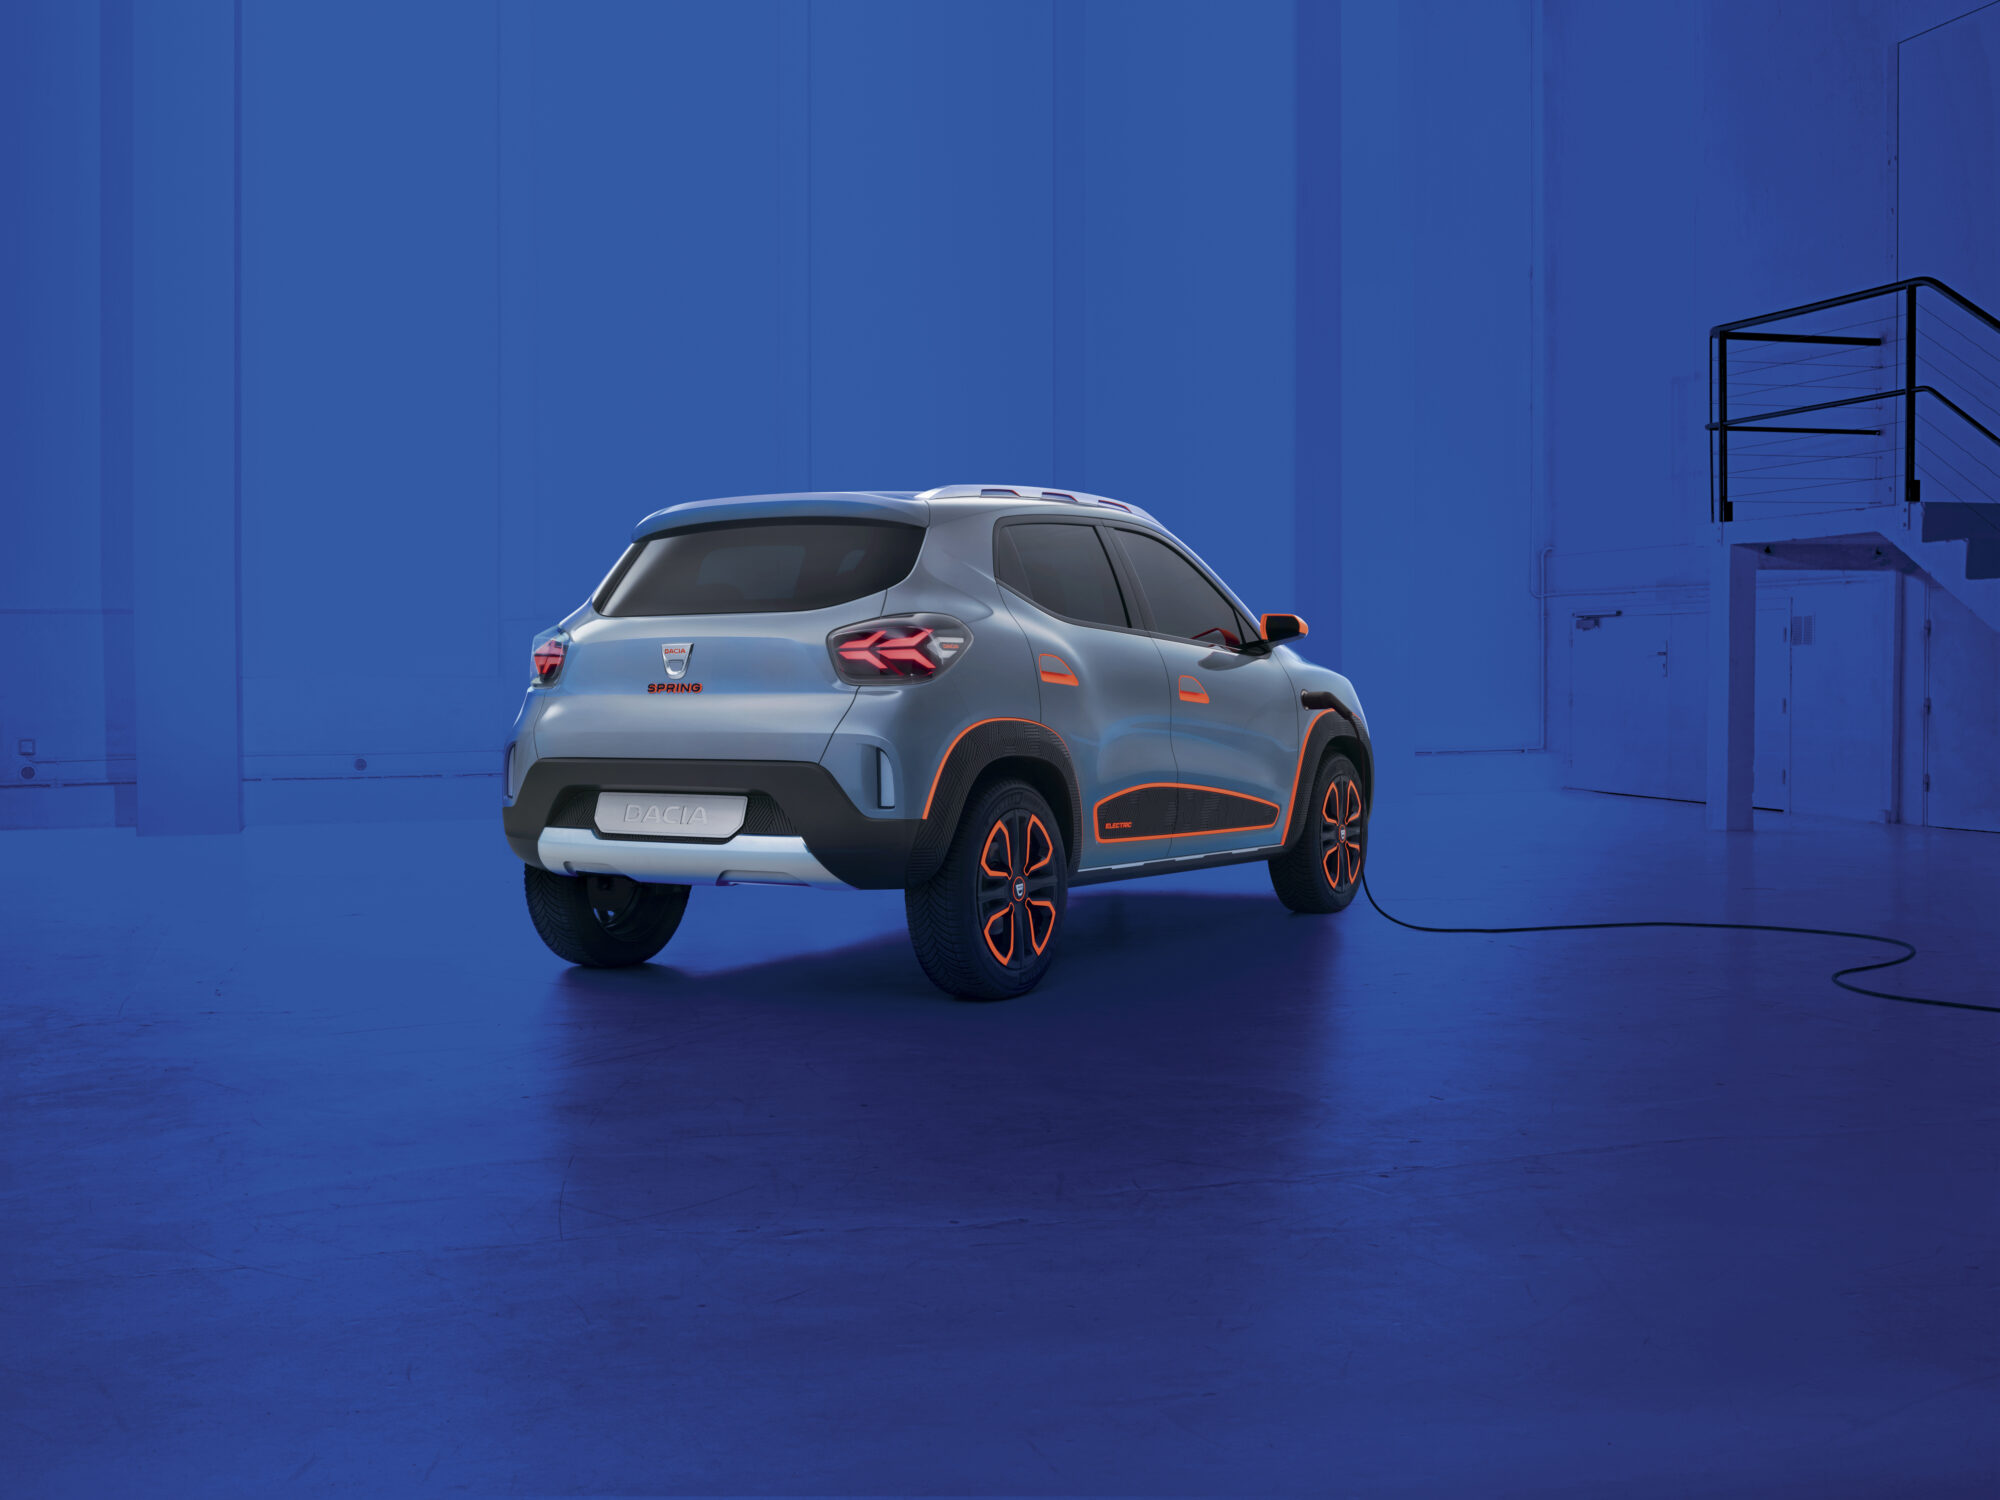 2020 - Dacia SPRING show car